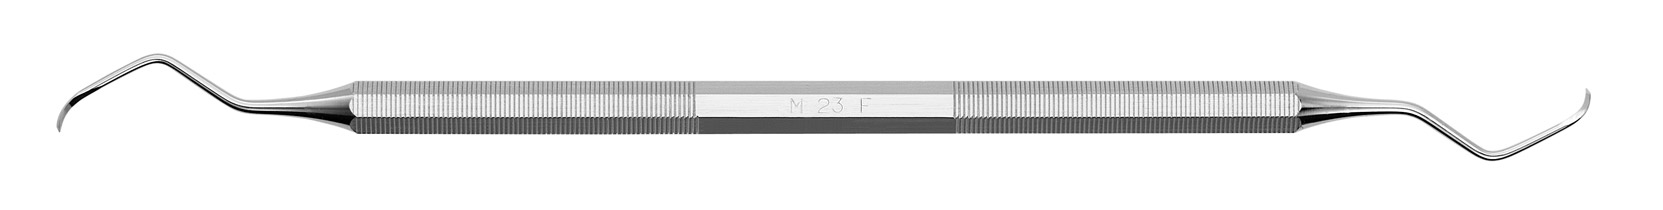 Scaler M23F